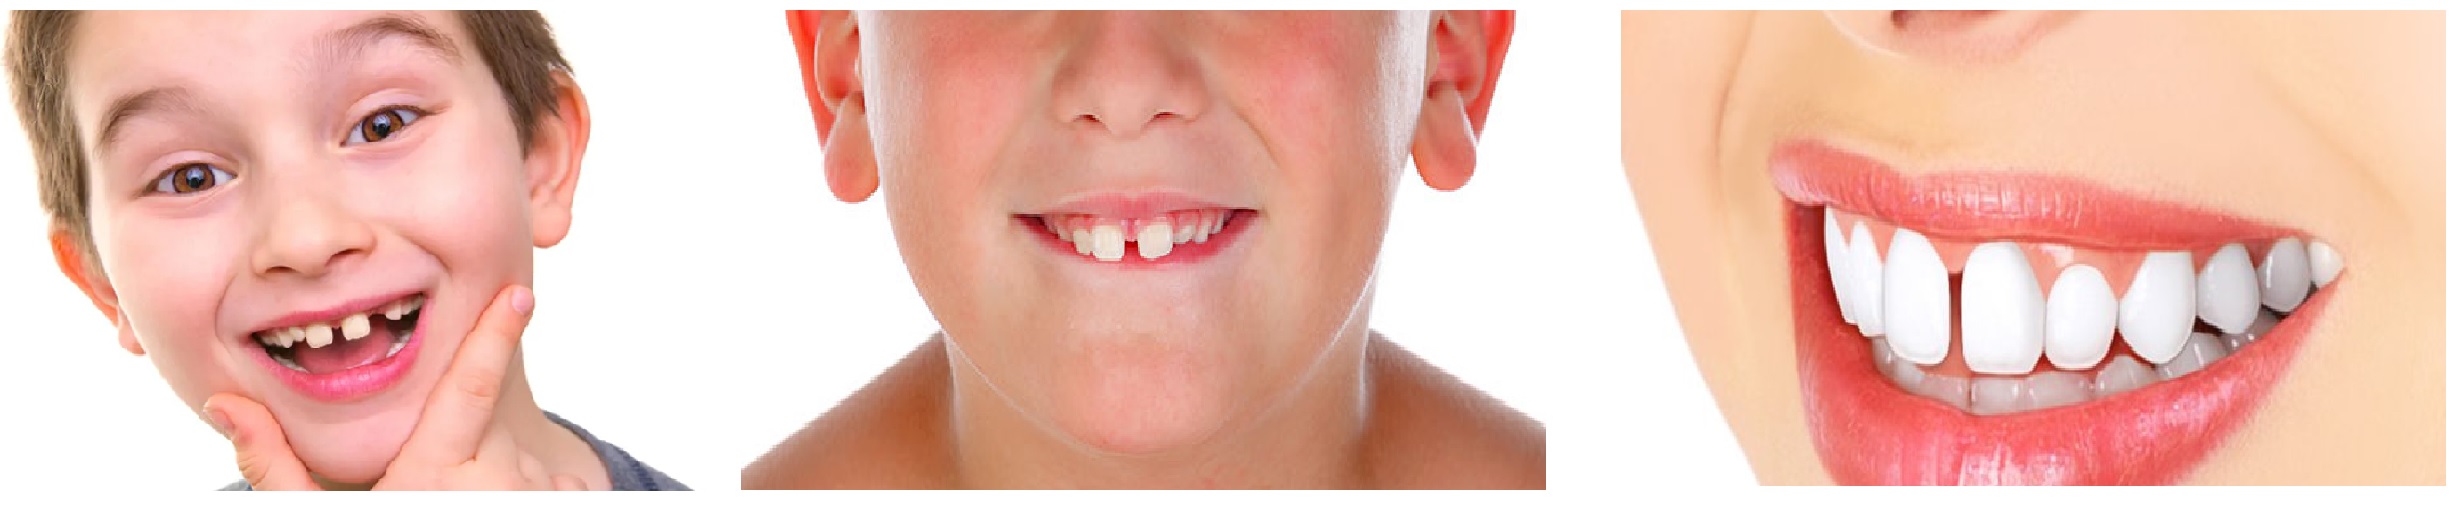 separacion entre dientes diastema